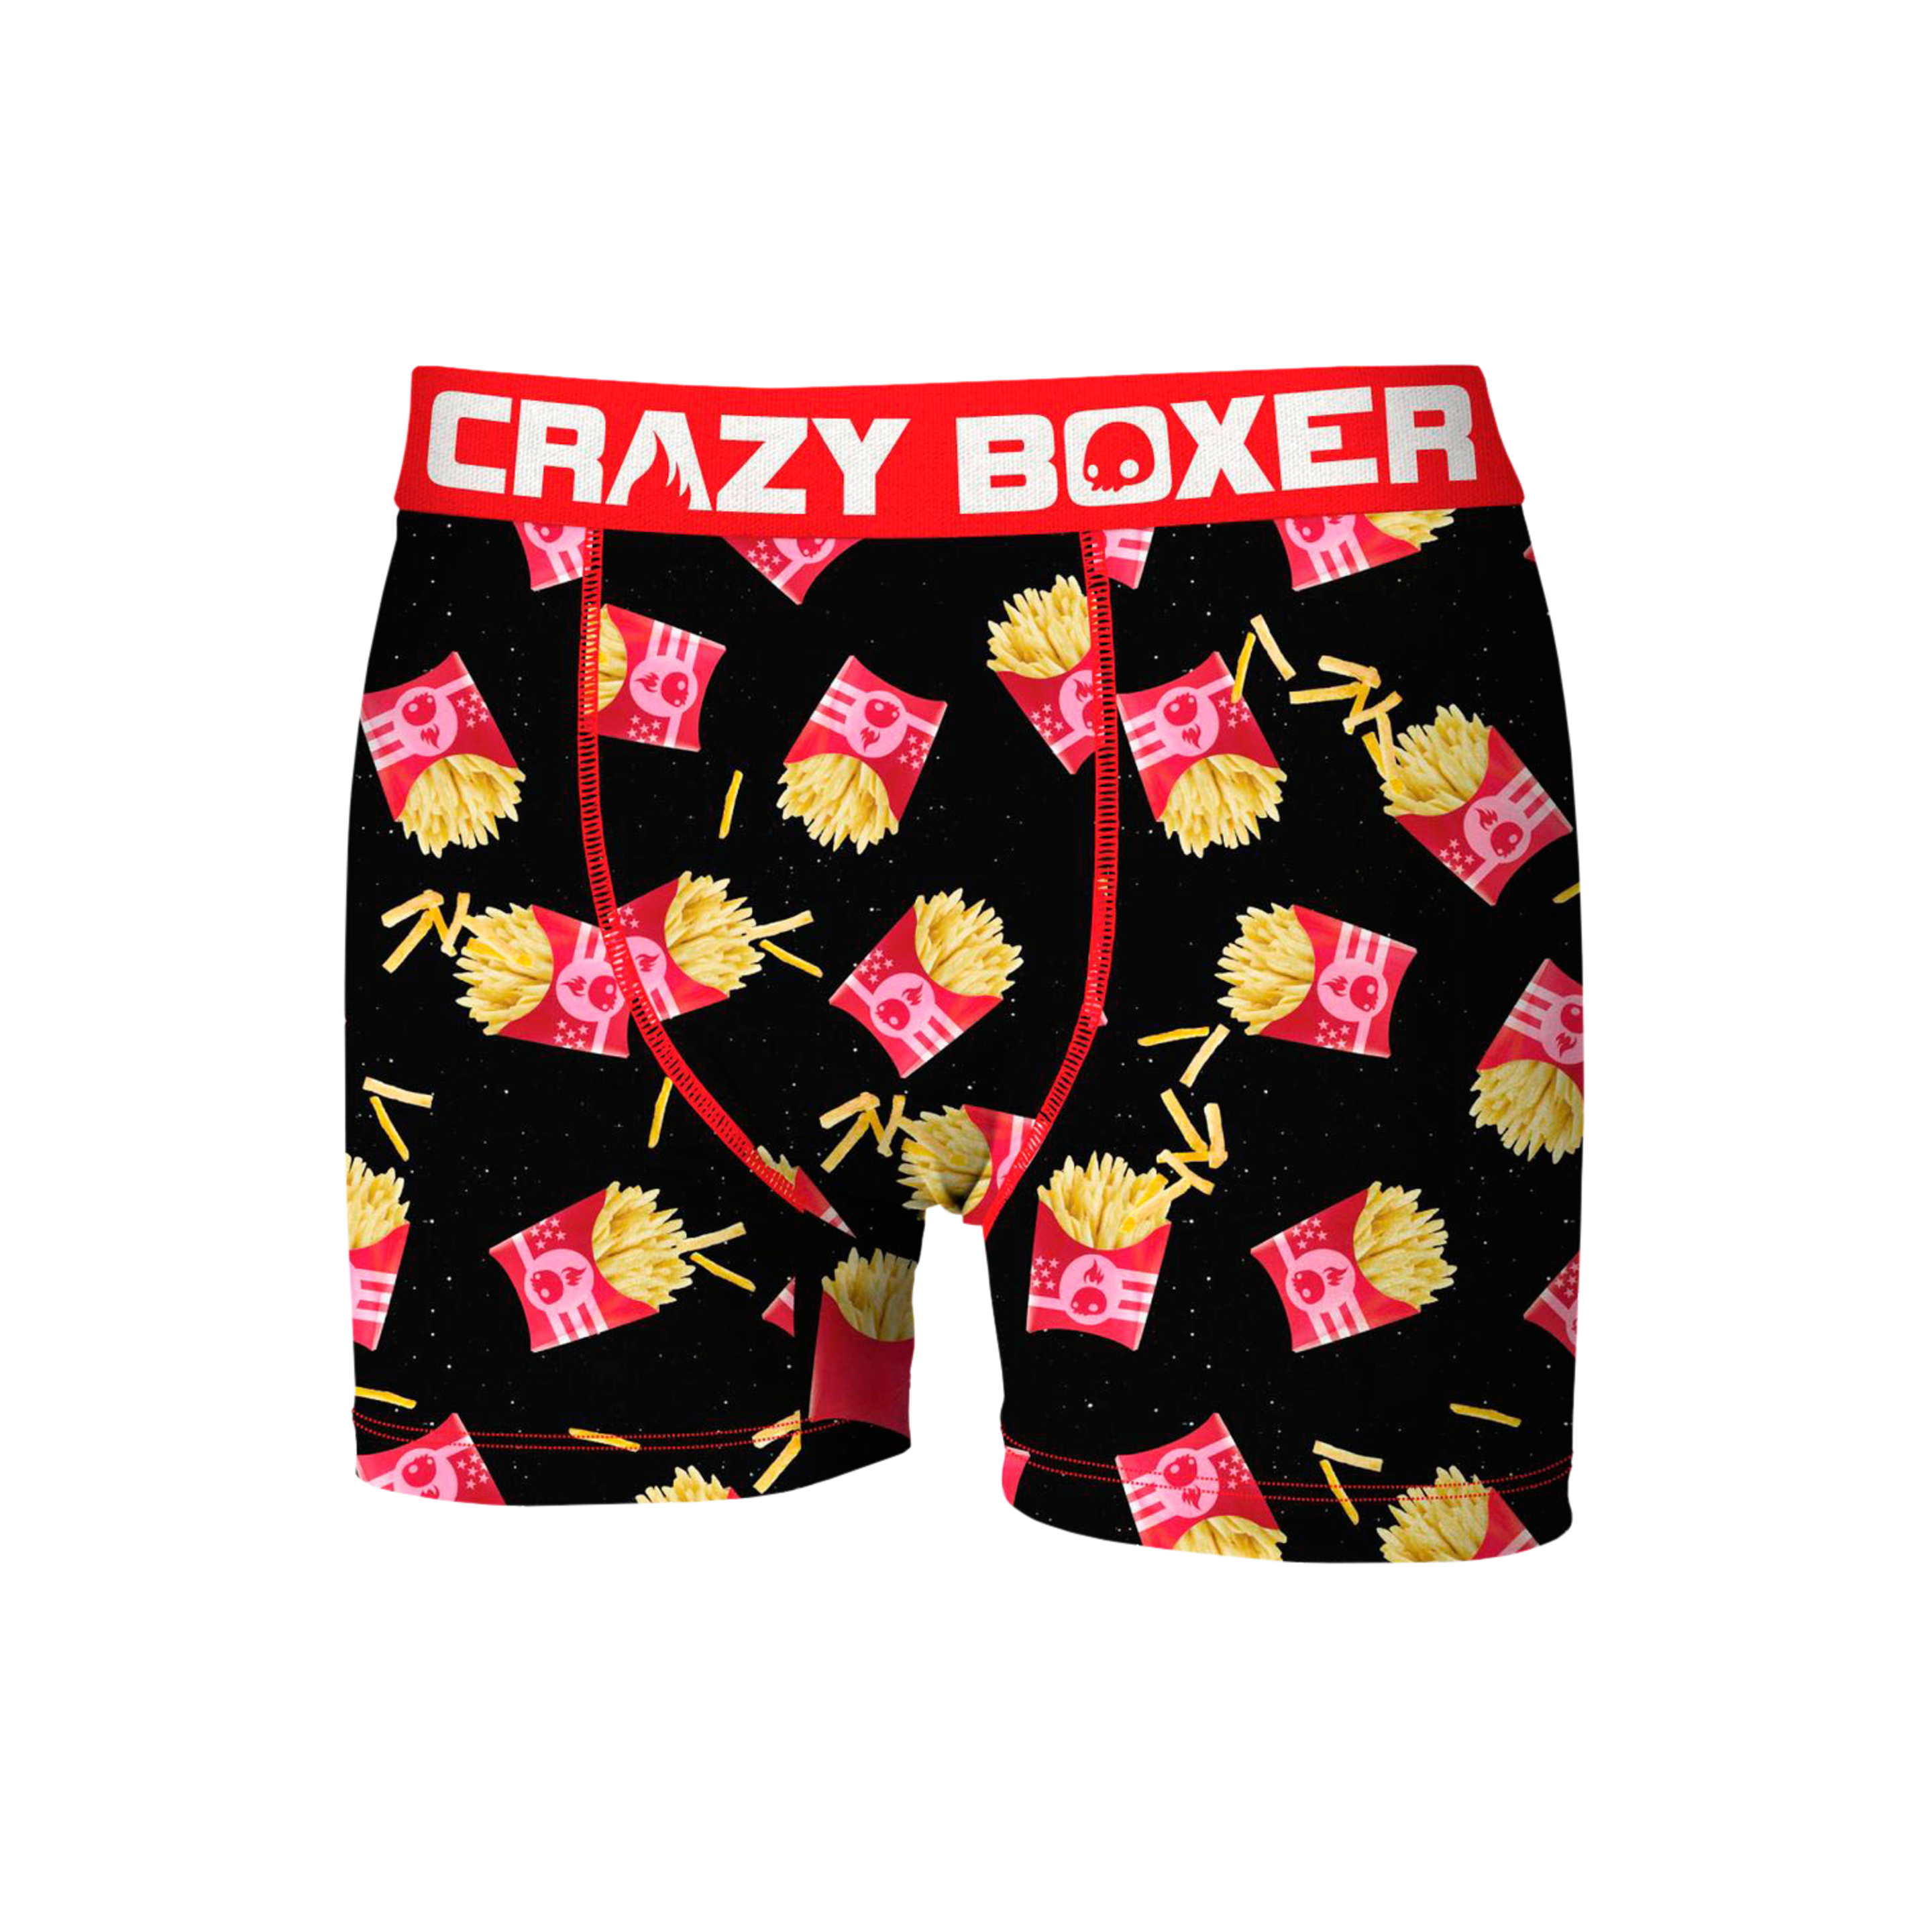 Calzoncillos Patatas Fritas Crazy Boxer Para Hombre